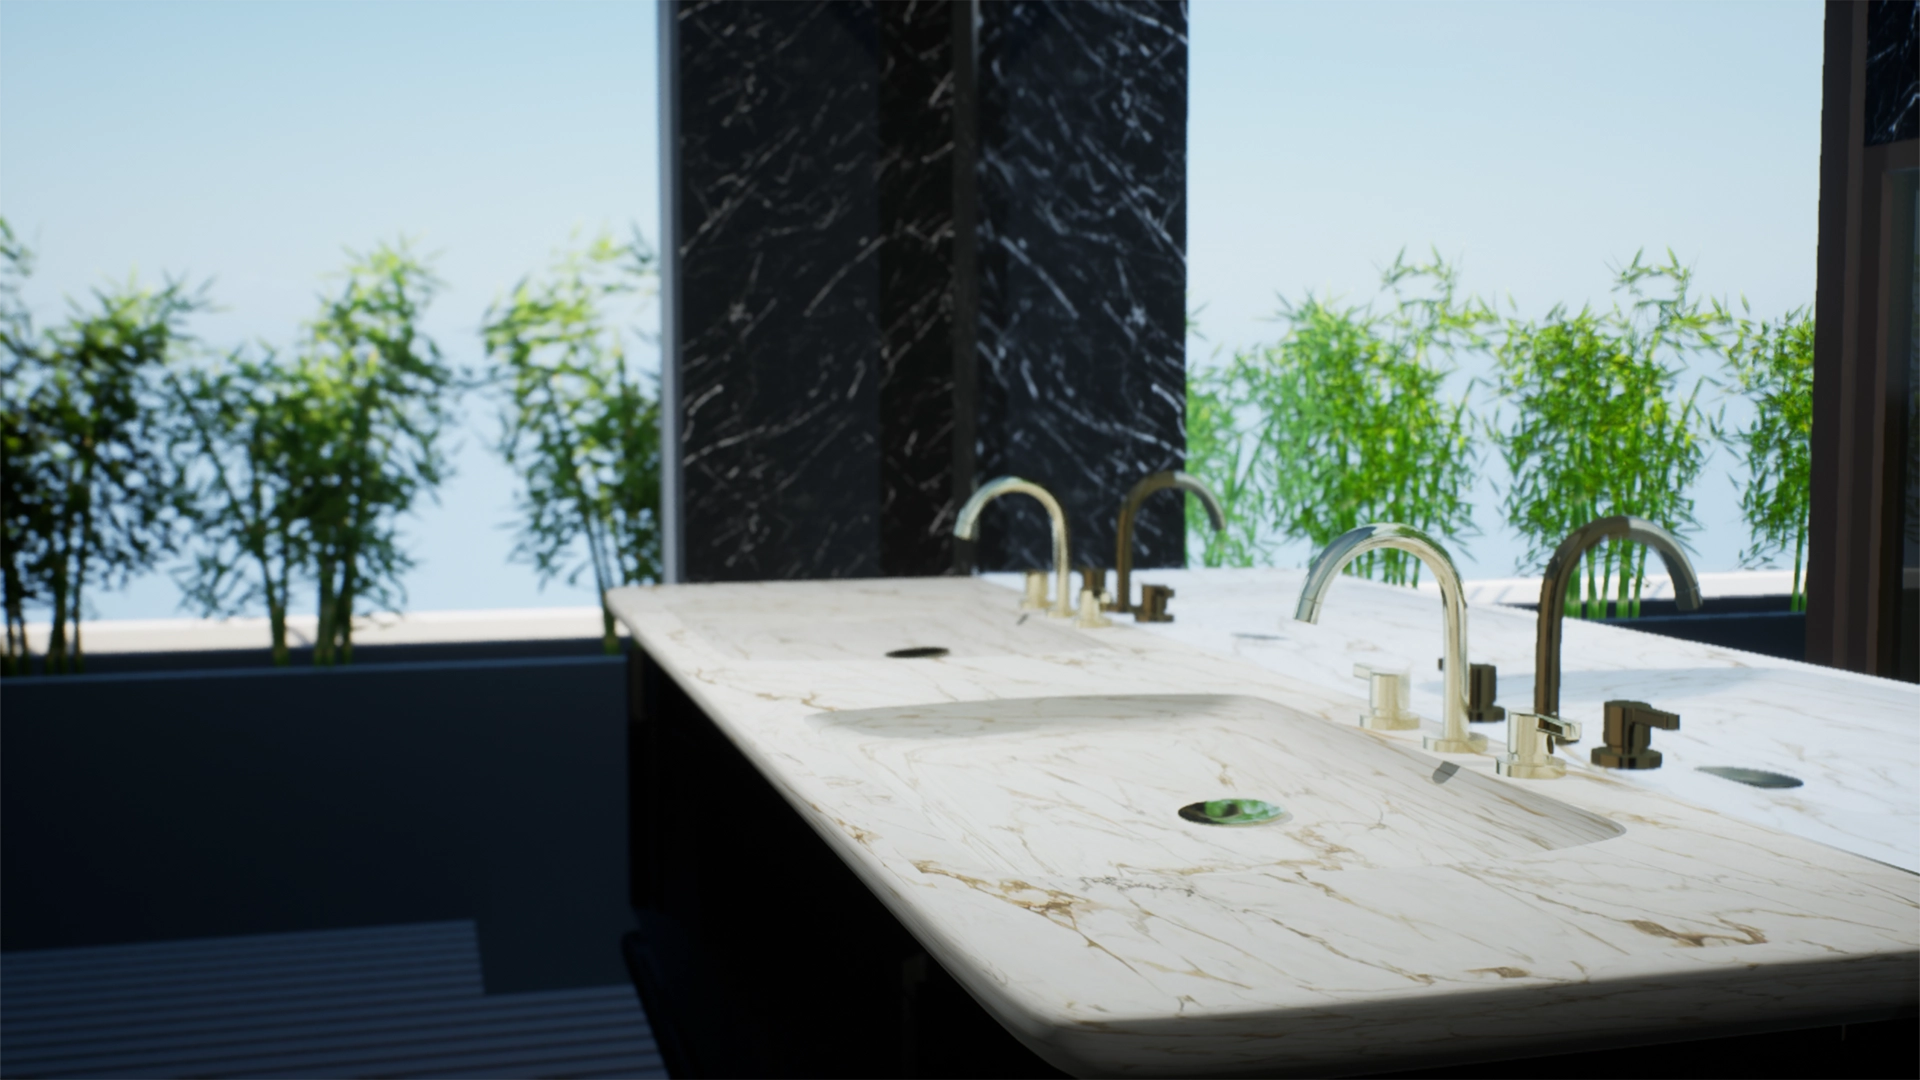 Render 3D di un bagno, in vista due lavandini sullo stesso piano in marmo, uno specchio che riflette una finestra su cui sono appoggiate delle piante esotiche